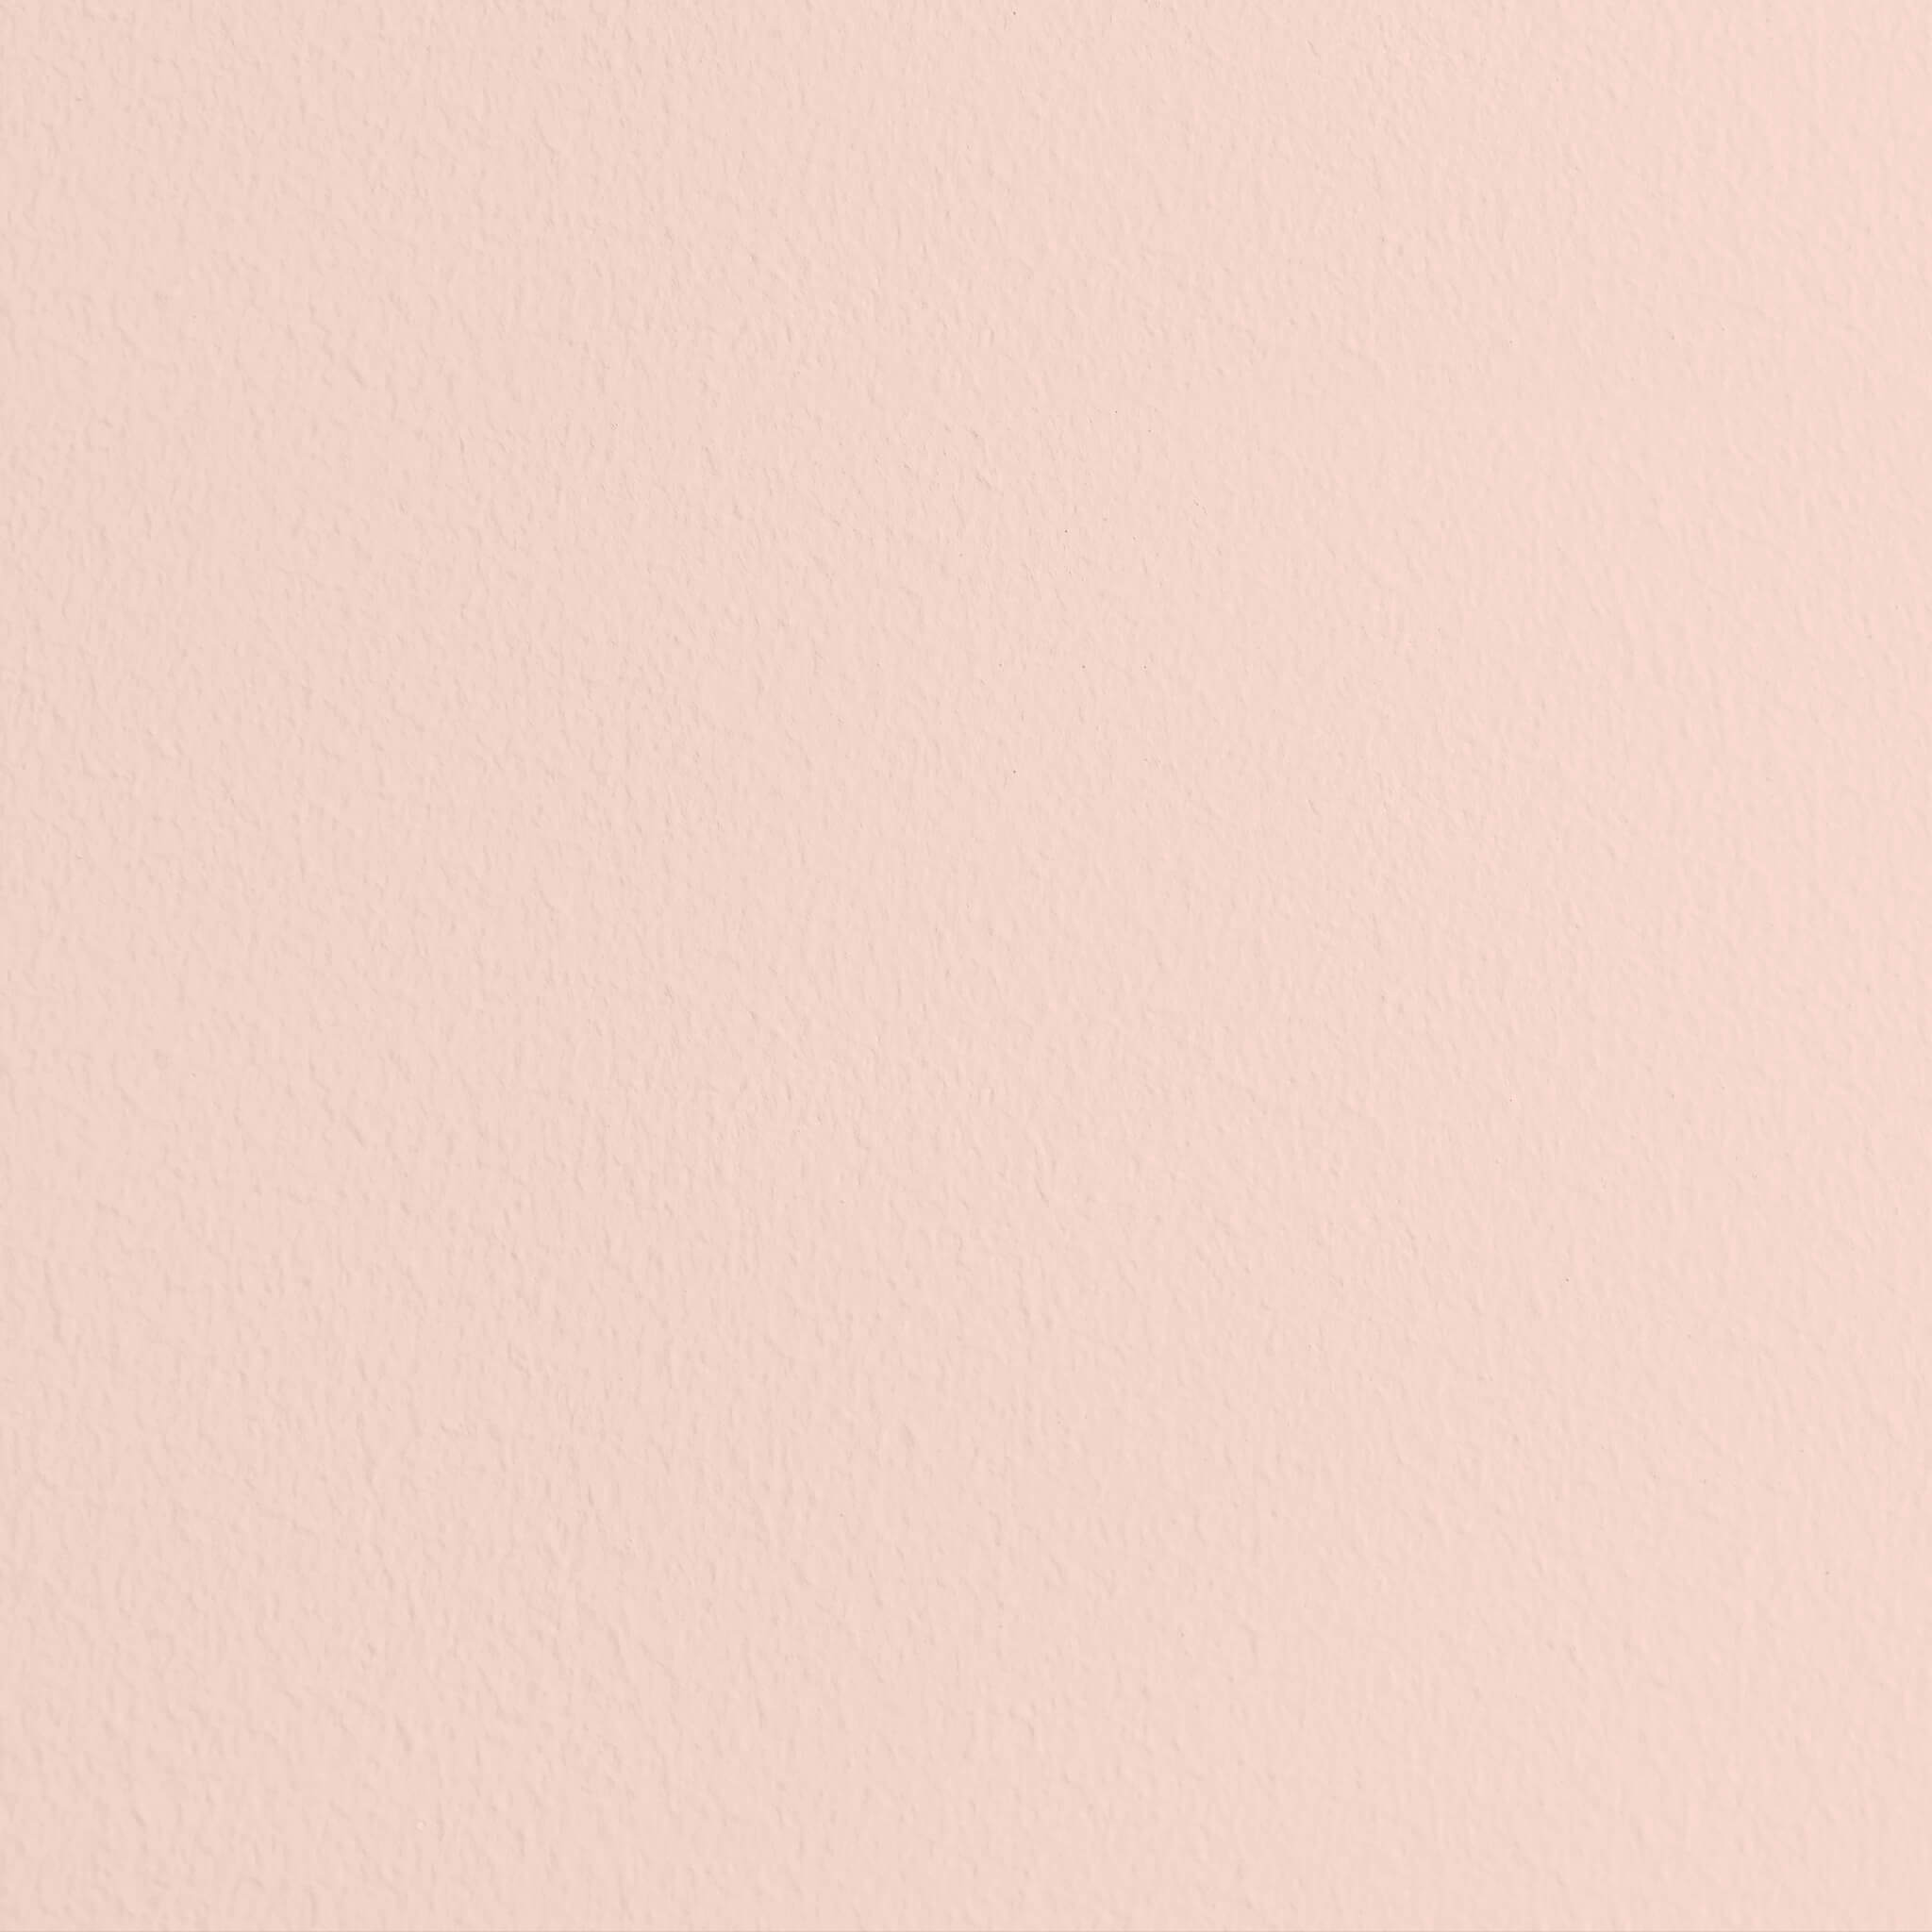 Mylands Palmerston Pink No. 243 - Wood & Metal Matt / Lack Matt, 5L